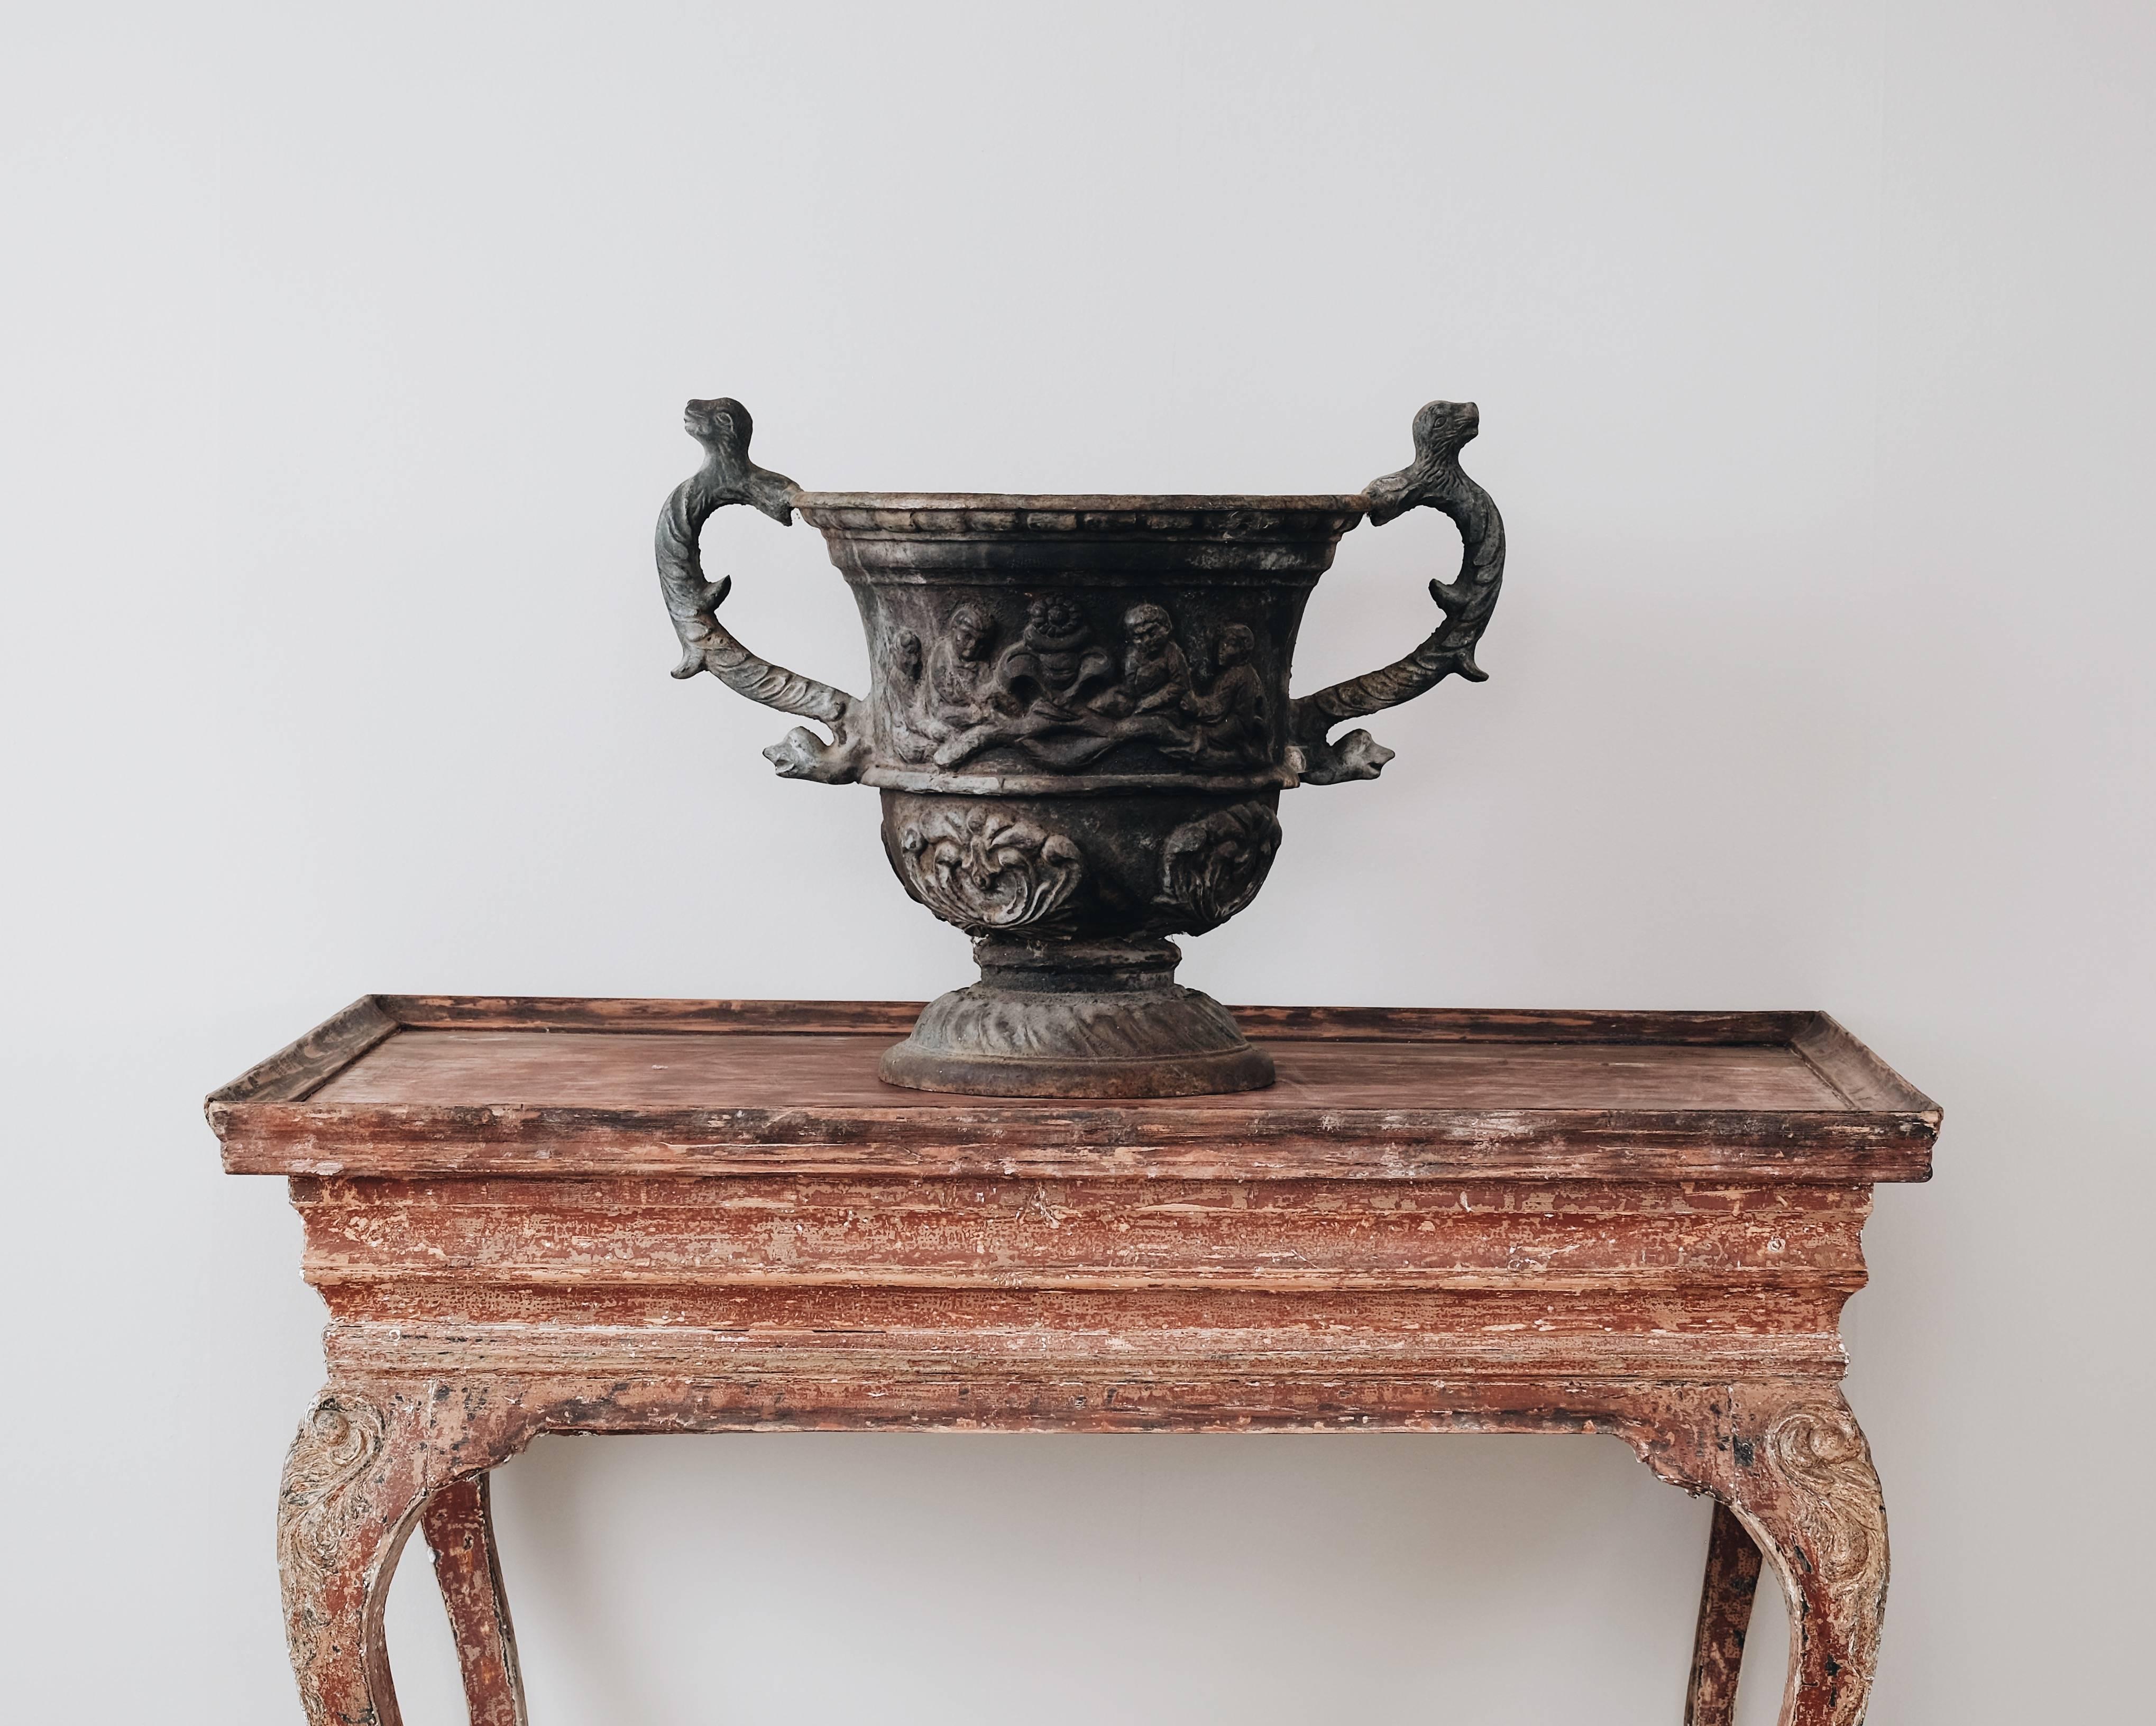 Sculptural 20th century Swedish cast-iron garden urn with dragon handles, circa 1930, Sweden.